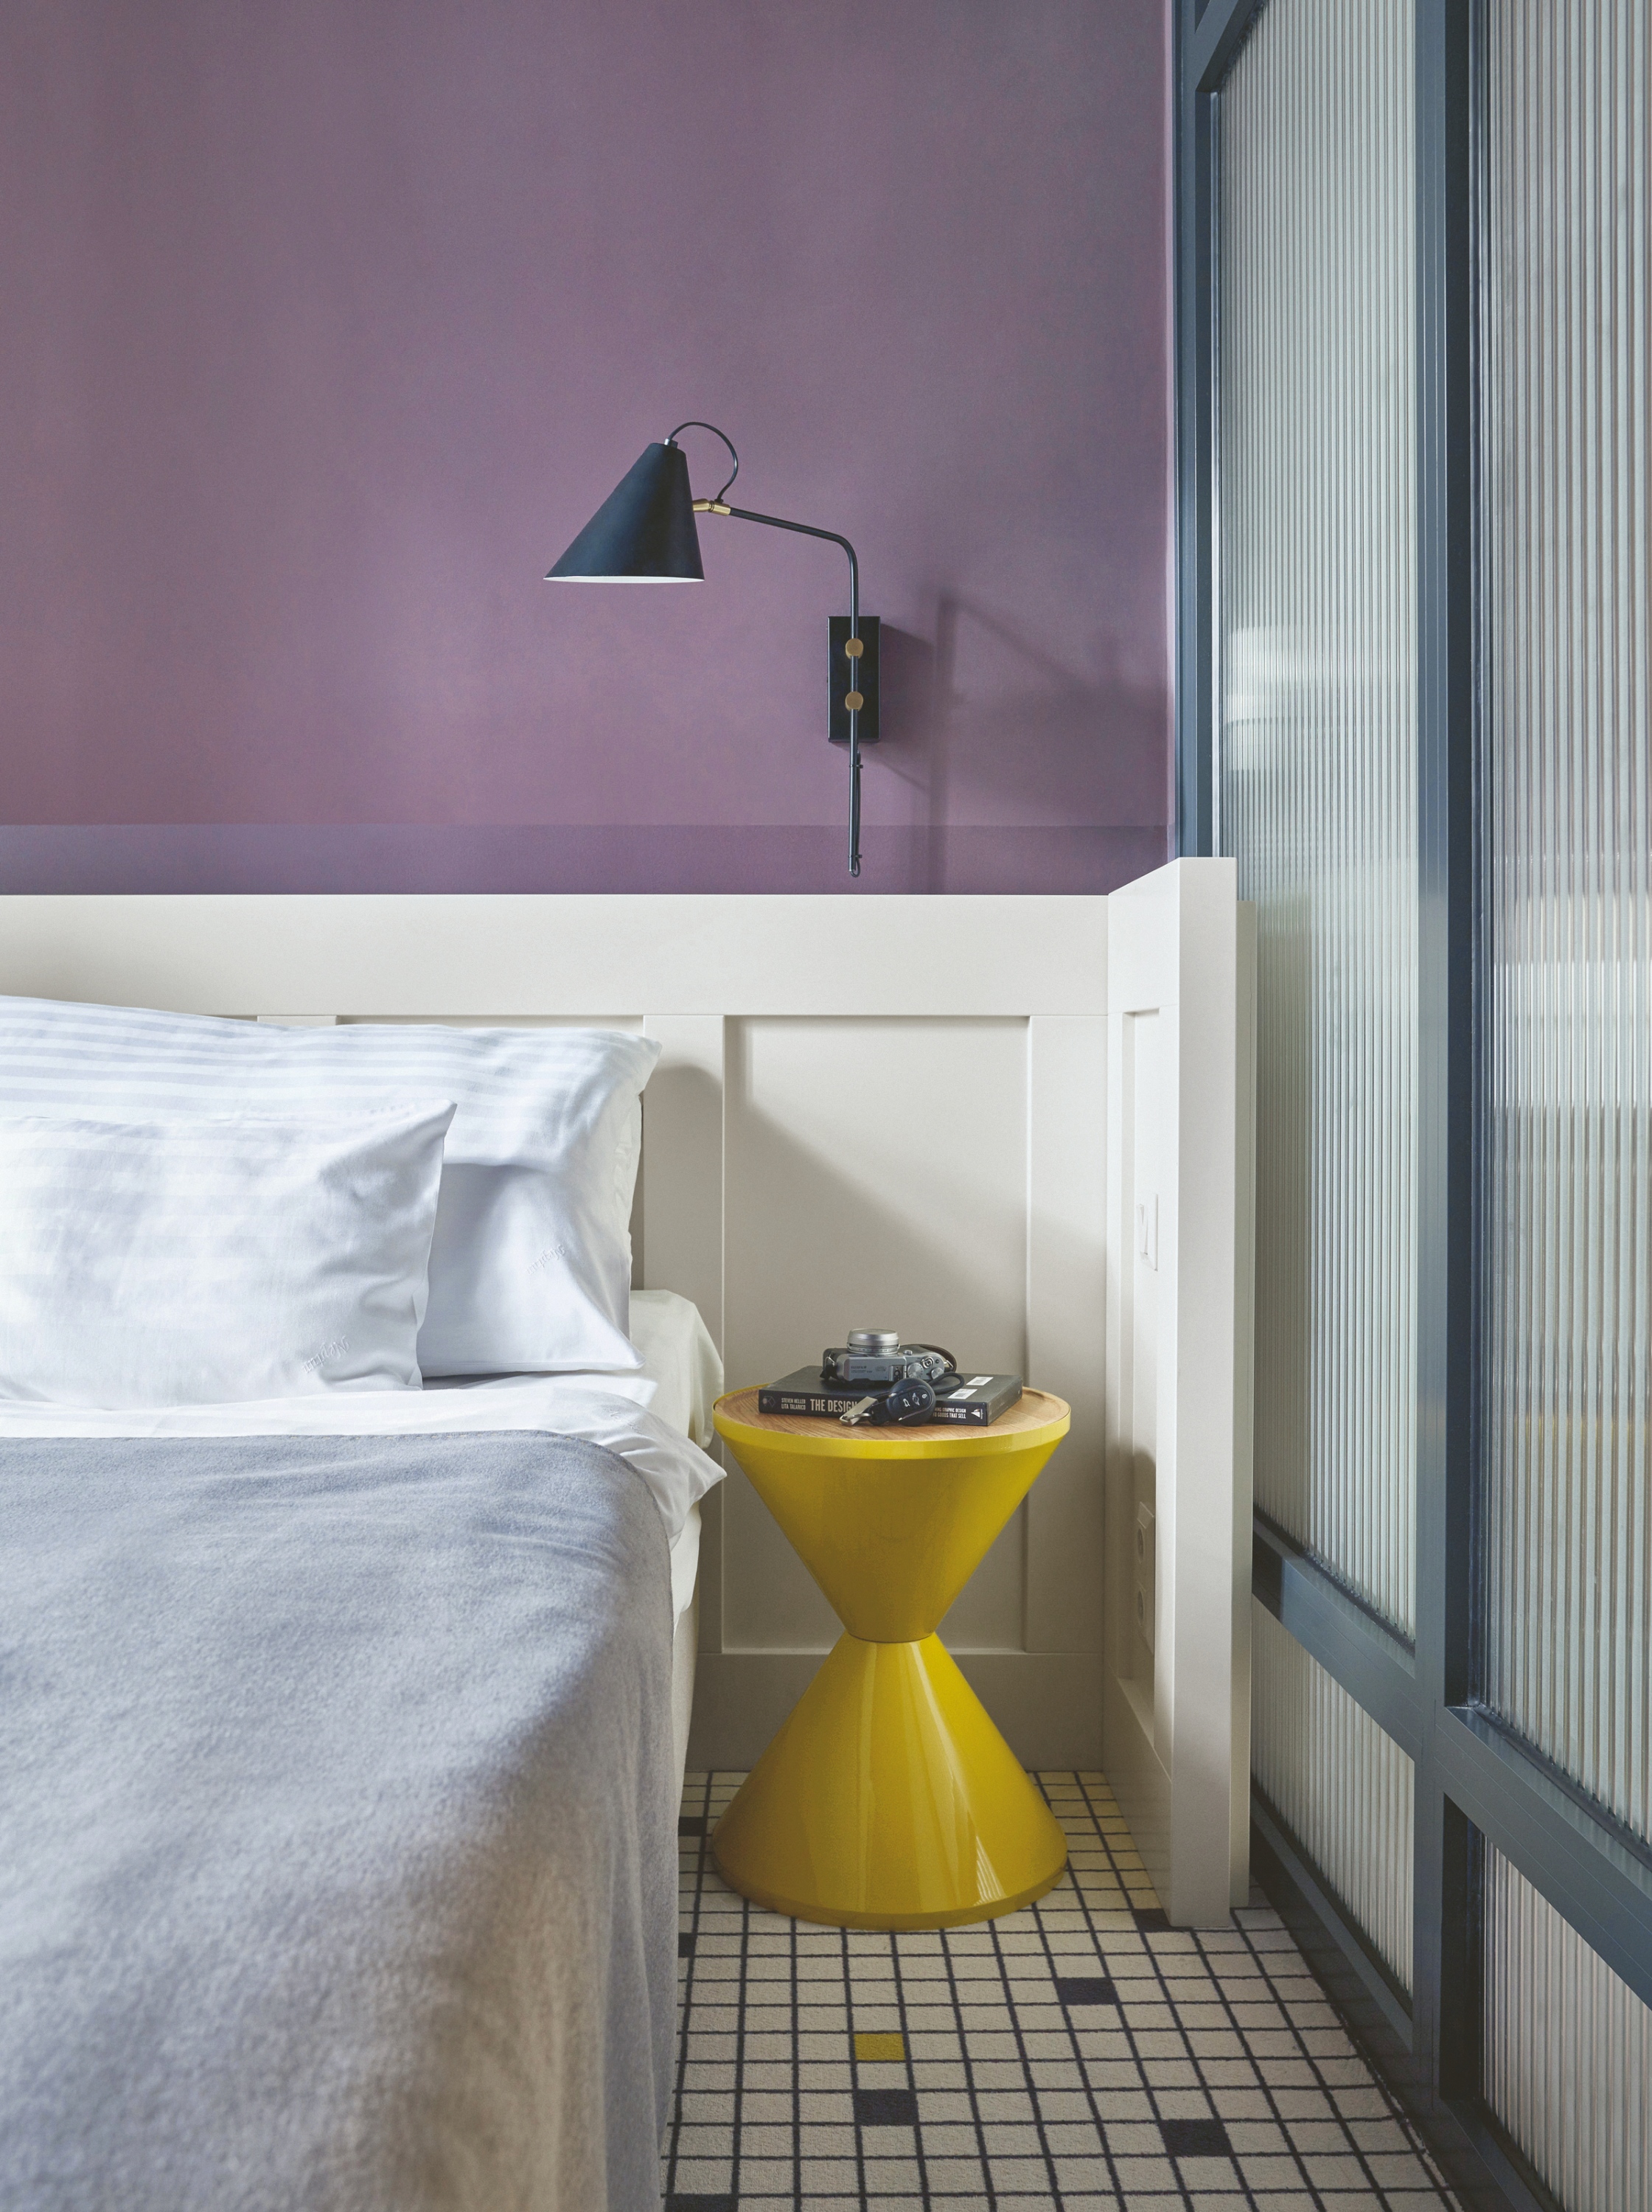 A Hotel Neptun polgári és modern stílust ötvözően a szobákban erős színekkel és üvegfalakkal dolgozik. A klasszikus formavilág mellett feltűnik egy újragondolt mozaikmintás padlószőnyeg is. Fotó: Barbay Csaba